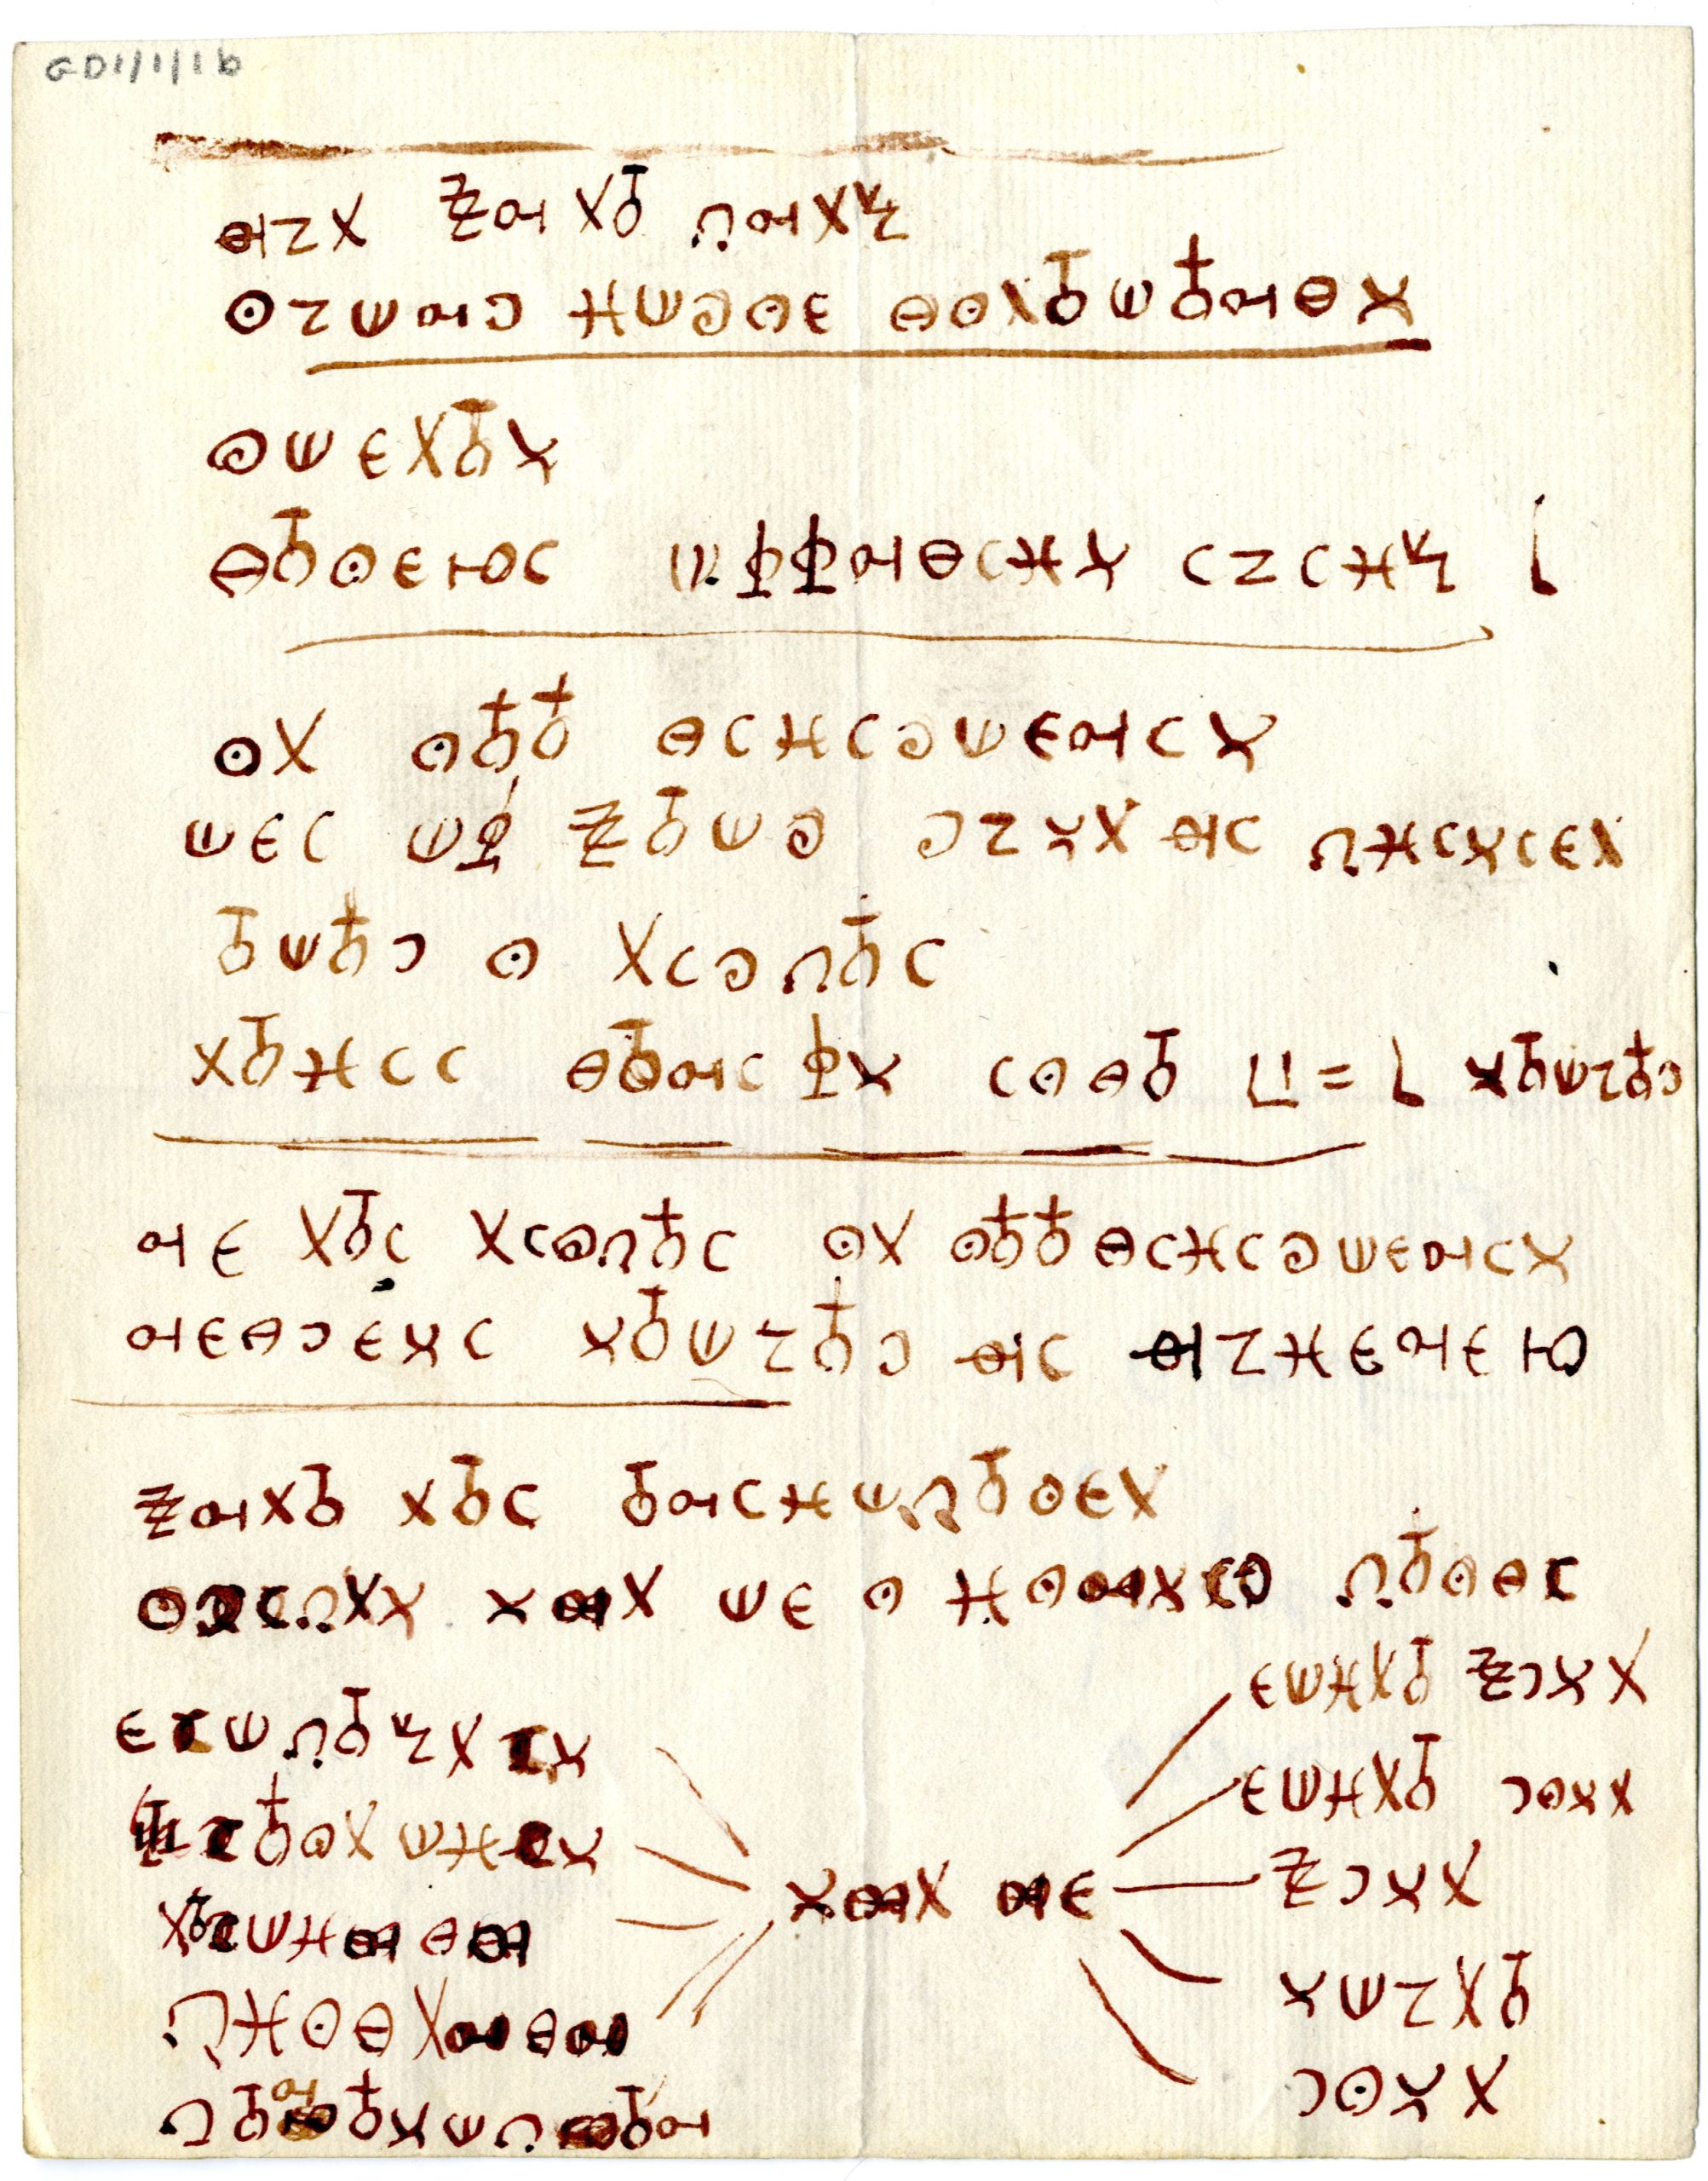 Handwritten cipher on paper.